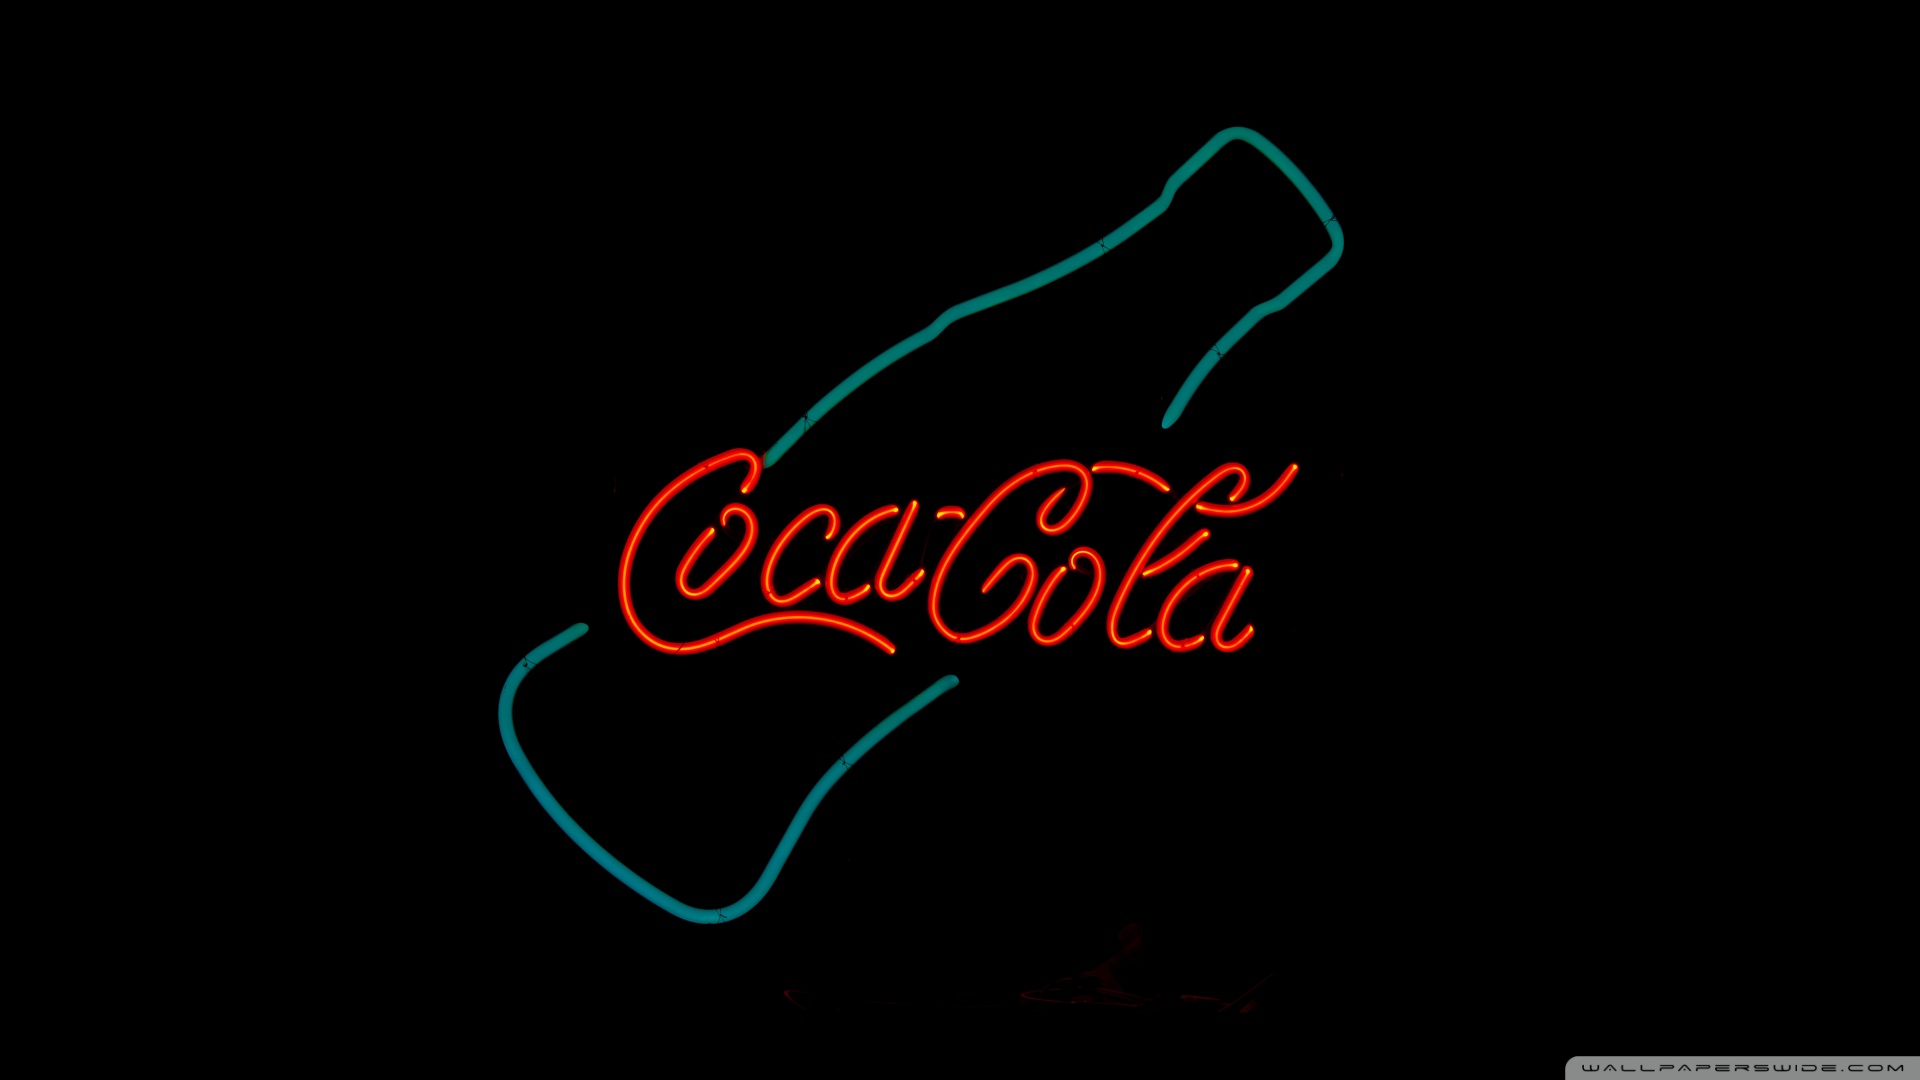 Coca Cola Collage Wallpaper Cocacola Picture